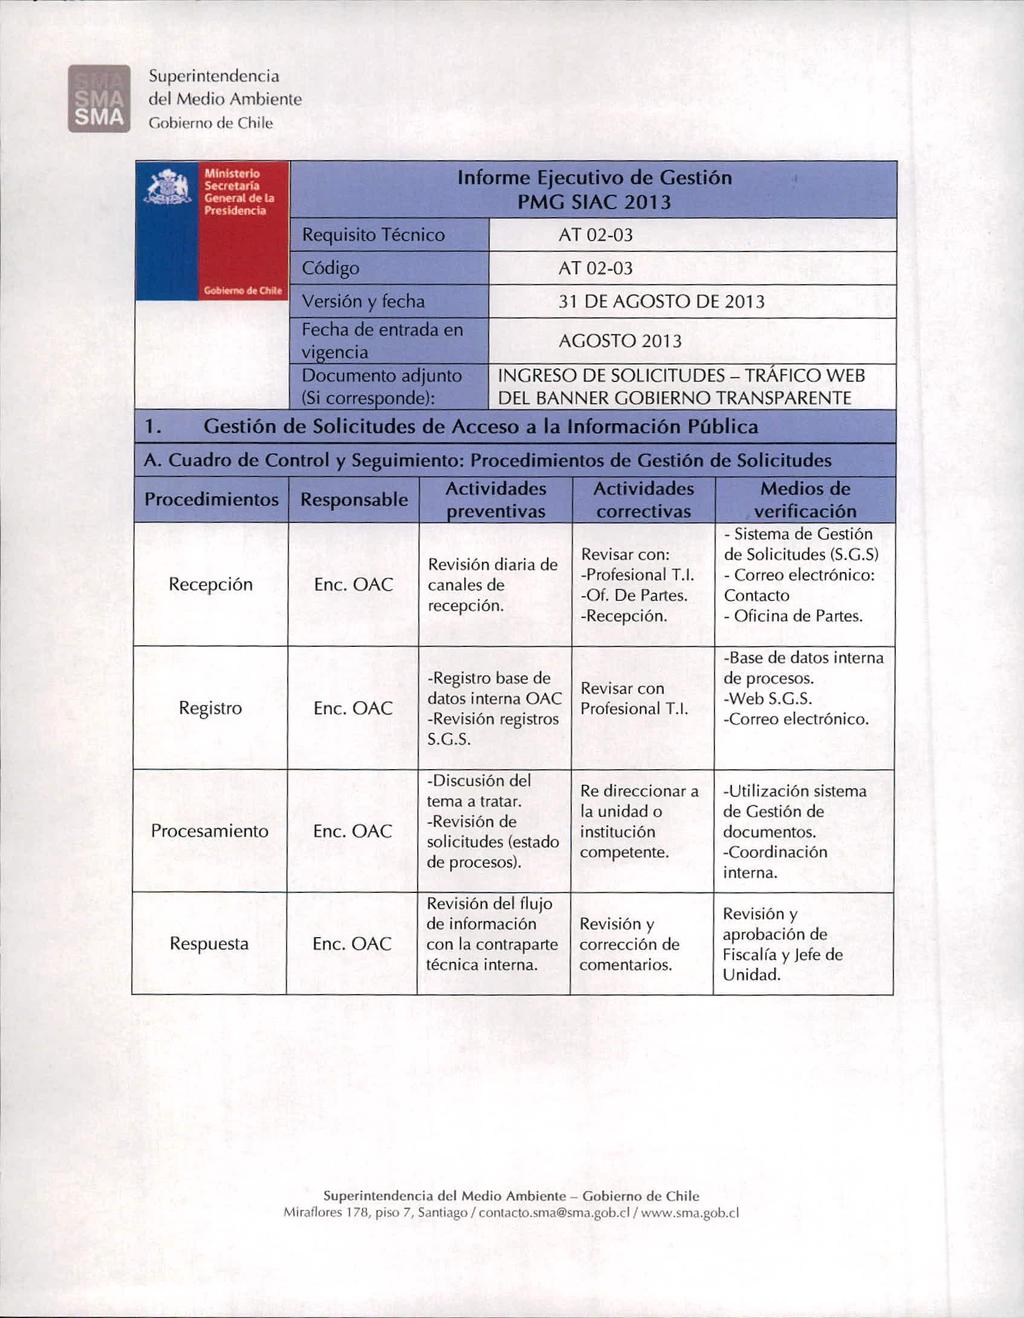 Superi ntendencia Gohierne) (fe Chile Requisito Código Técnico Informe Ejecutivo de Gestión PMG SIAC 2013 AT 02-03 AT 02-03 1.